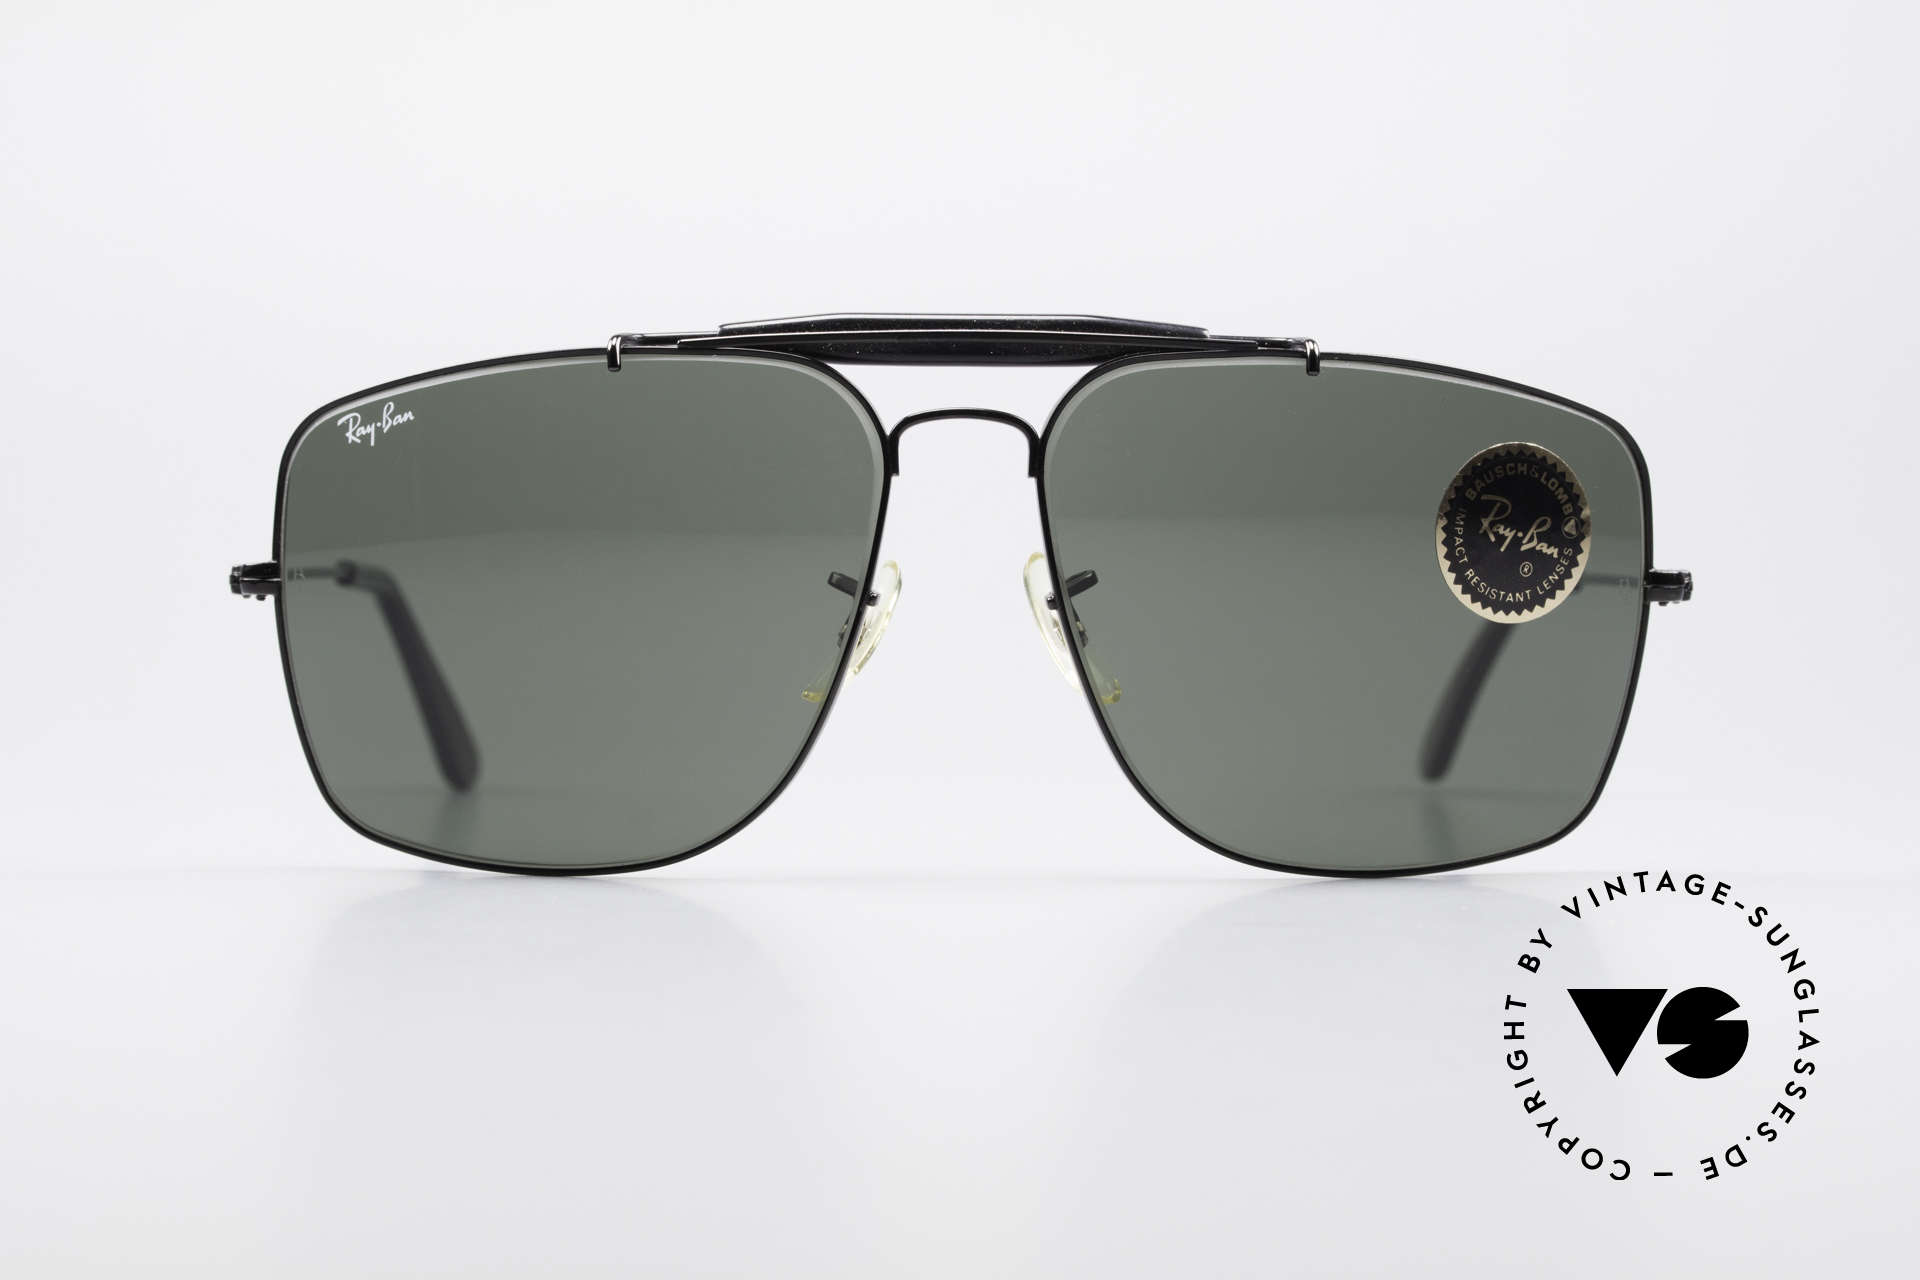 Sunglasses Ray Ban Explorer Large Old B&L USA Ray-Ban Shades